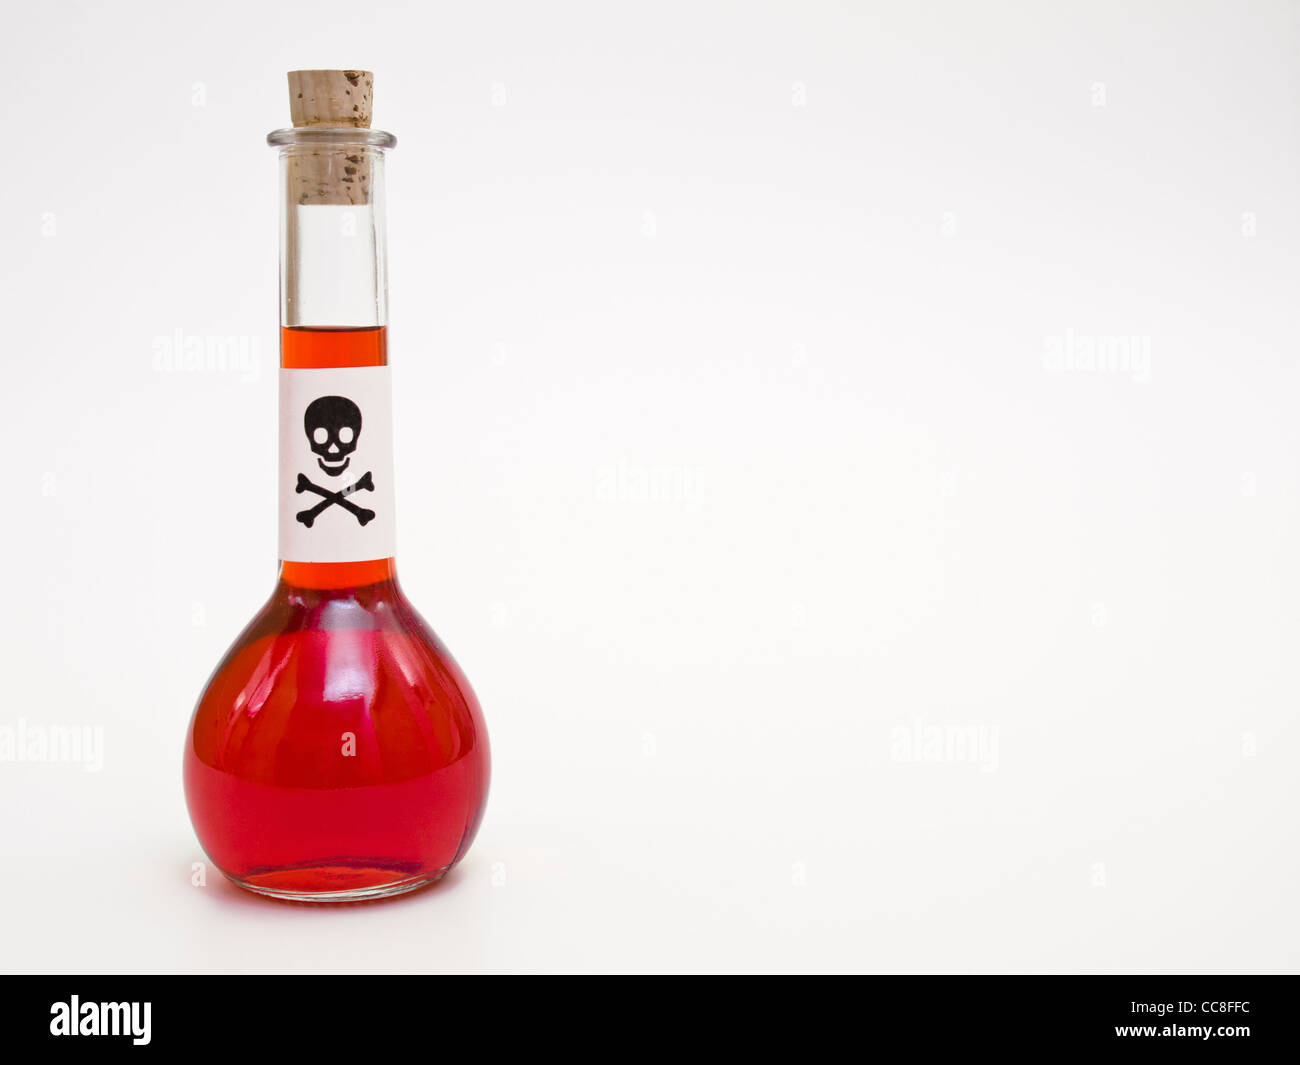 eine Flasche mit roter Flüssigkeit und einem Schild mit einem Totenkopf | a bottle with red liquid and a death's-head label Stock Photo